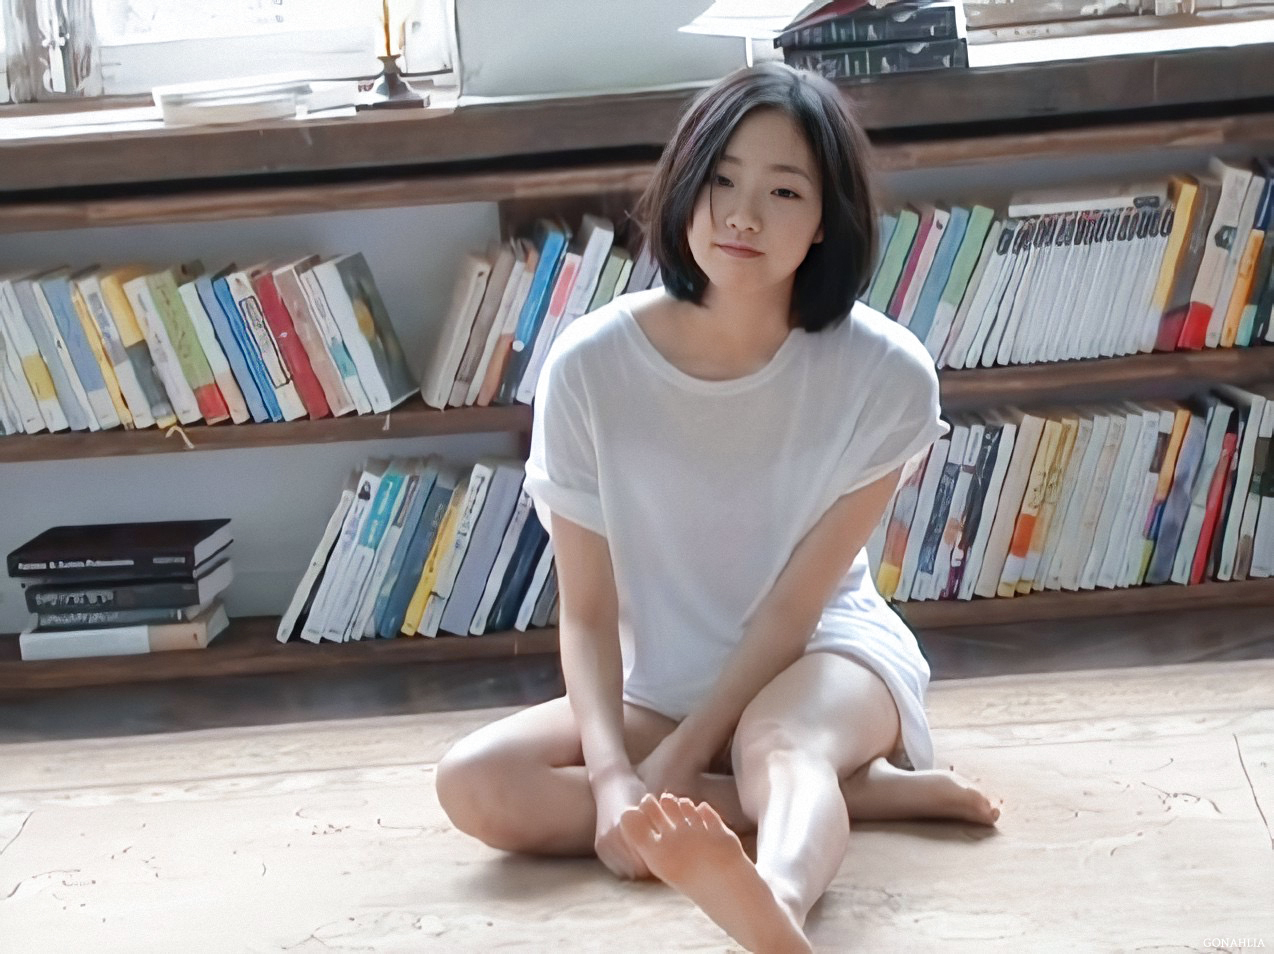 Kim Go Eun Feet